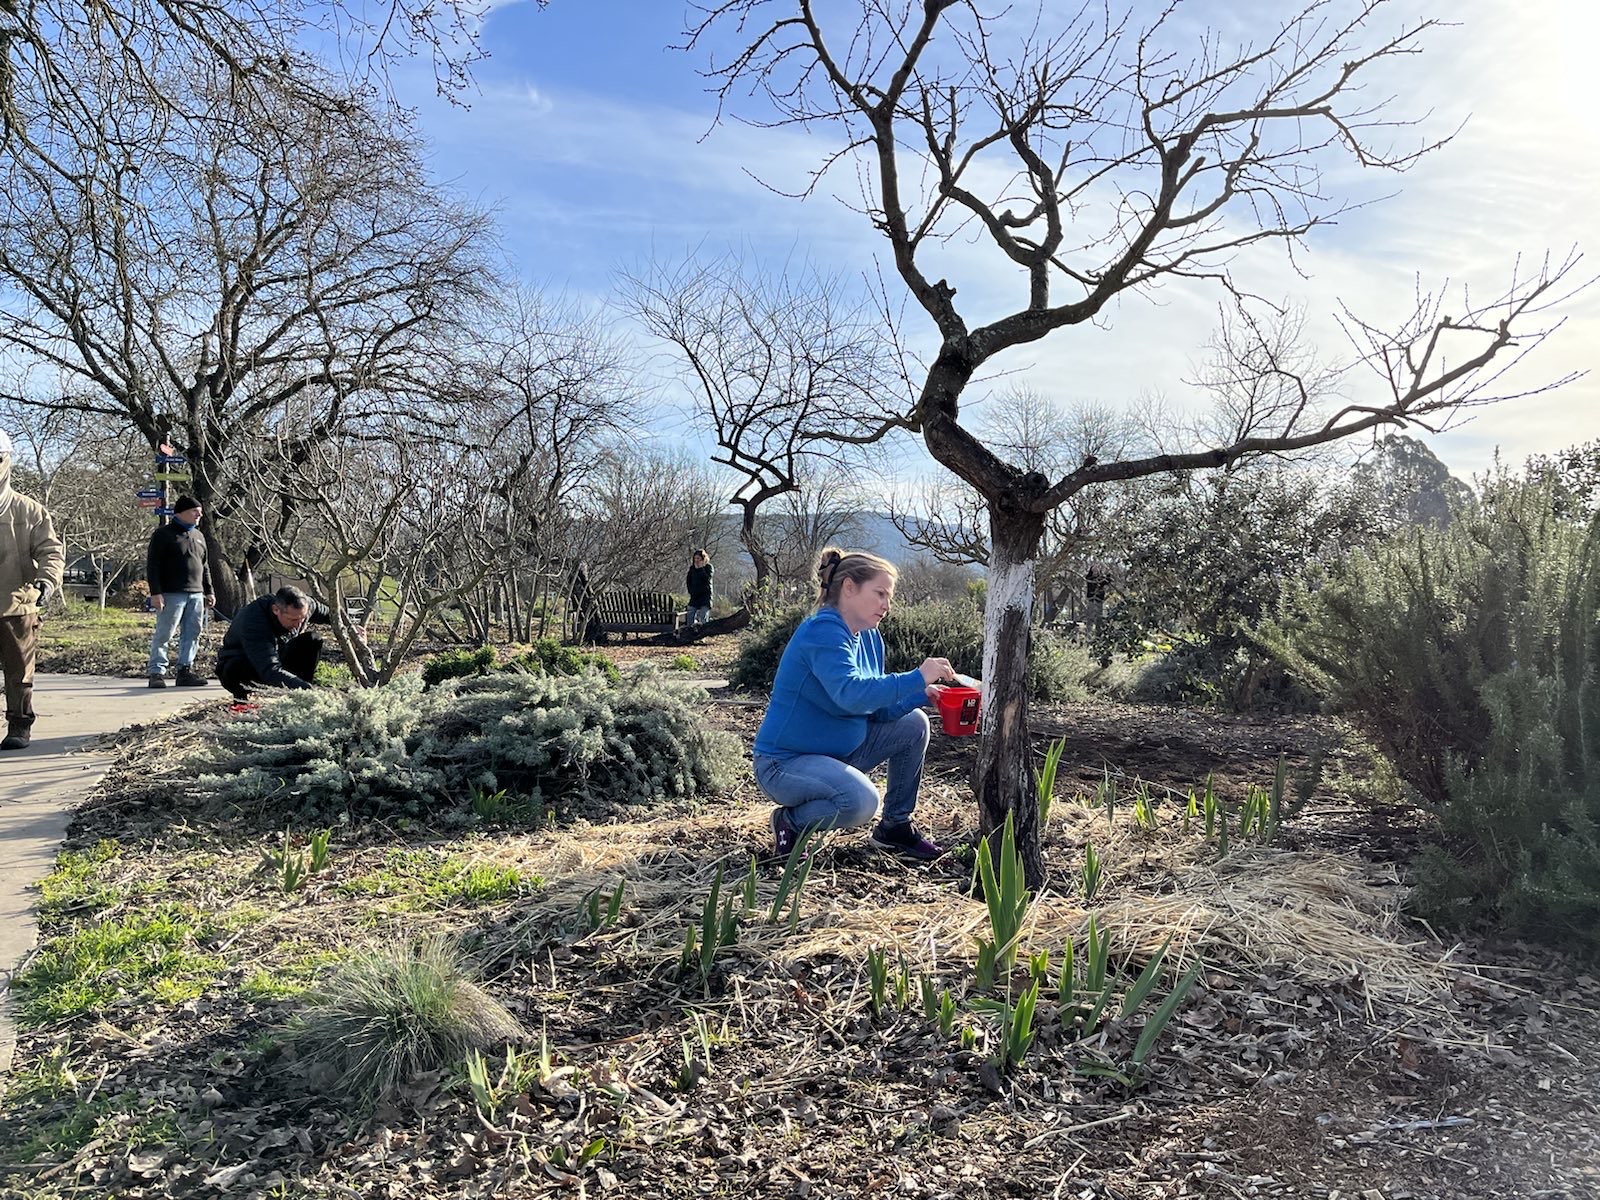 Earth Day Volunteering at Sonoma Garden Park | Día de trabajo voluntario (en honor al Día de la Tierra) en Sonoma Garden Park @ Sonoma Garden Park | Sonoma | California | United States